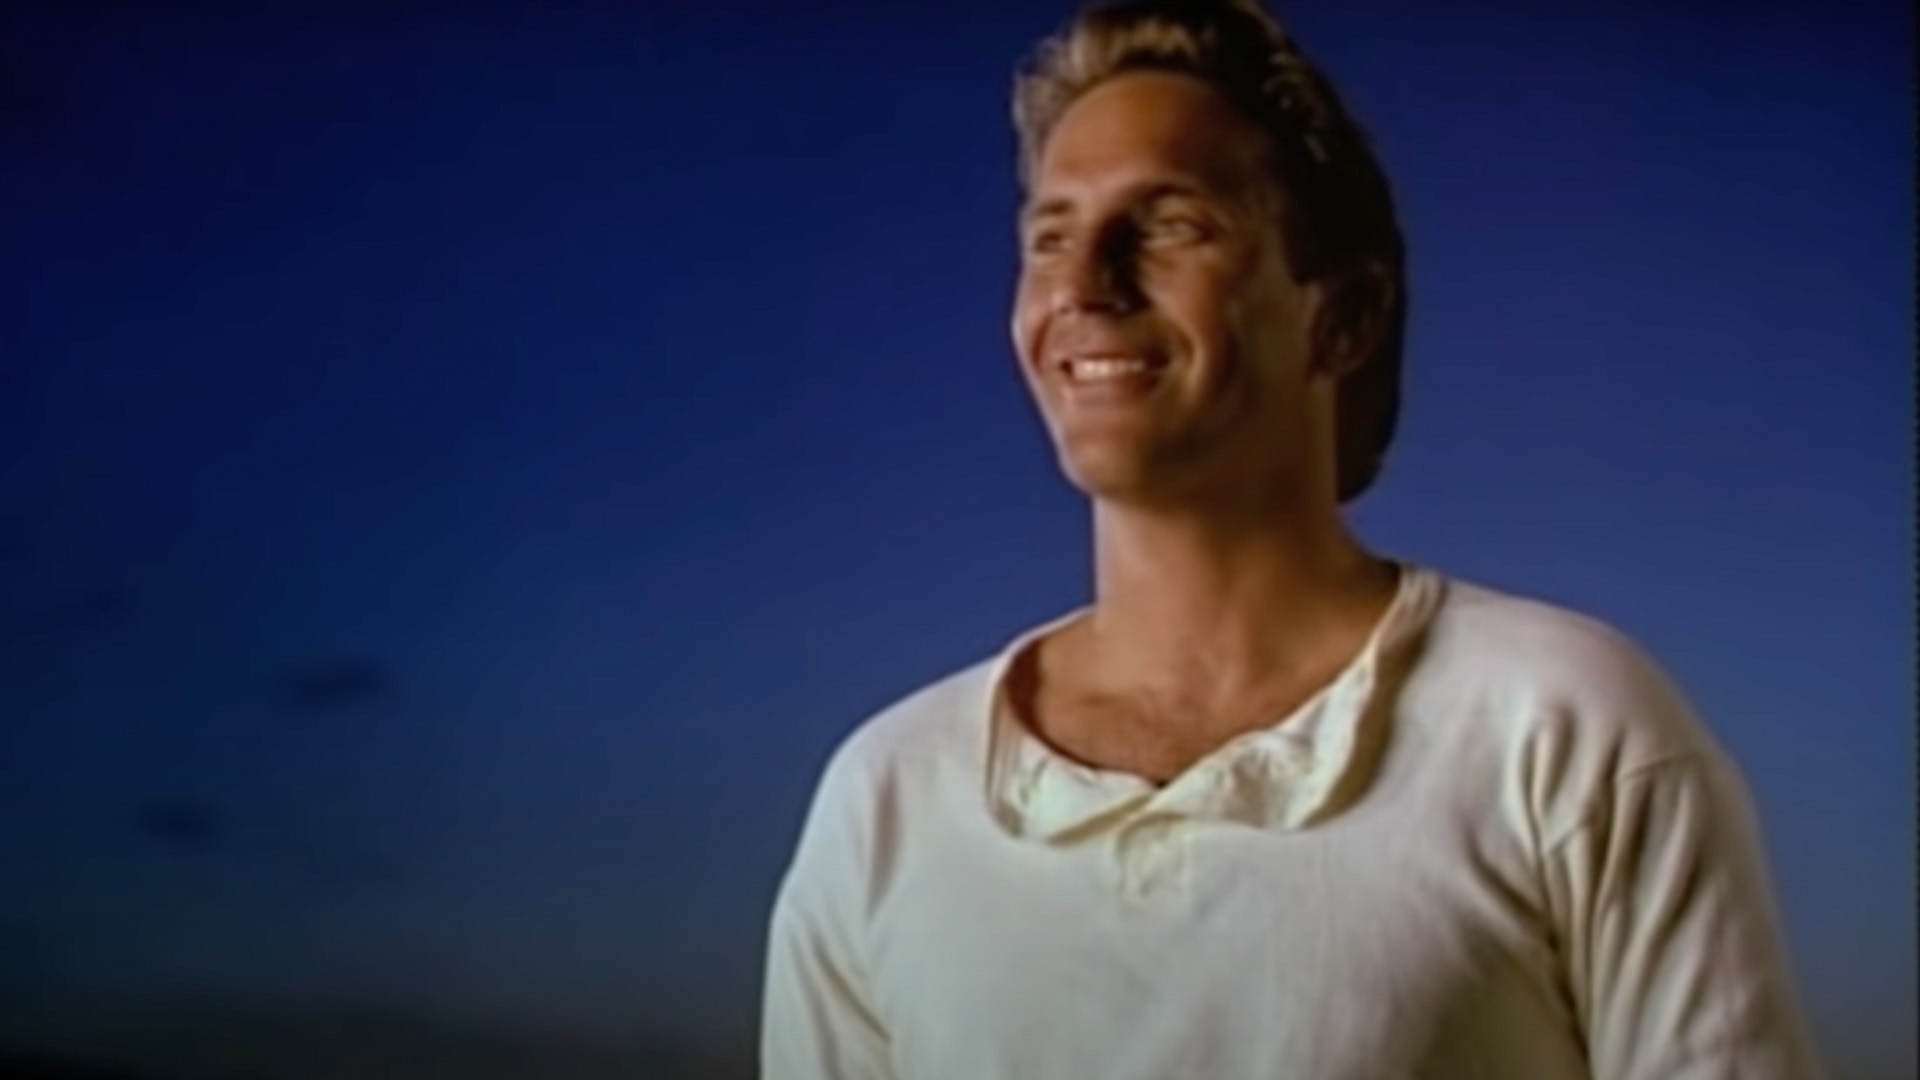 Kevin Costner in Field Of Dreams (1989).